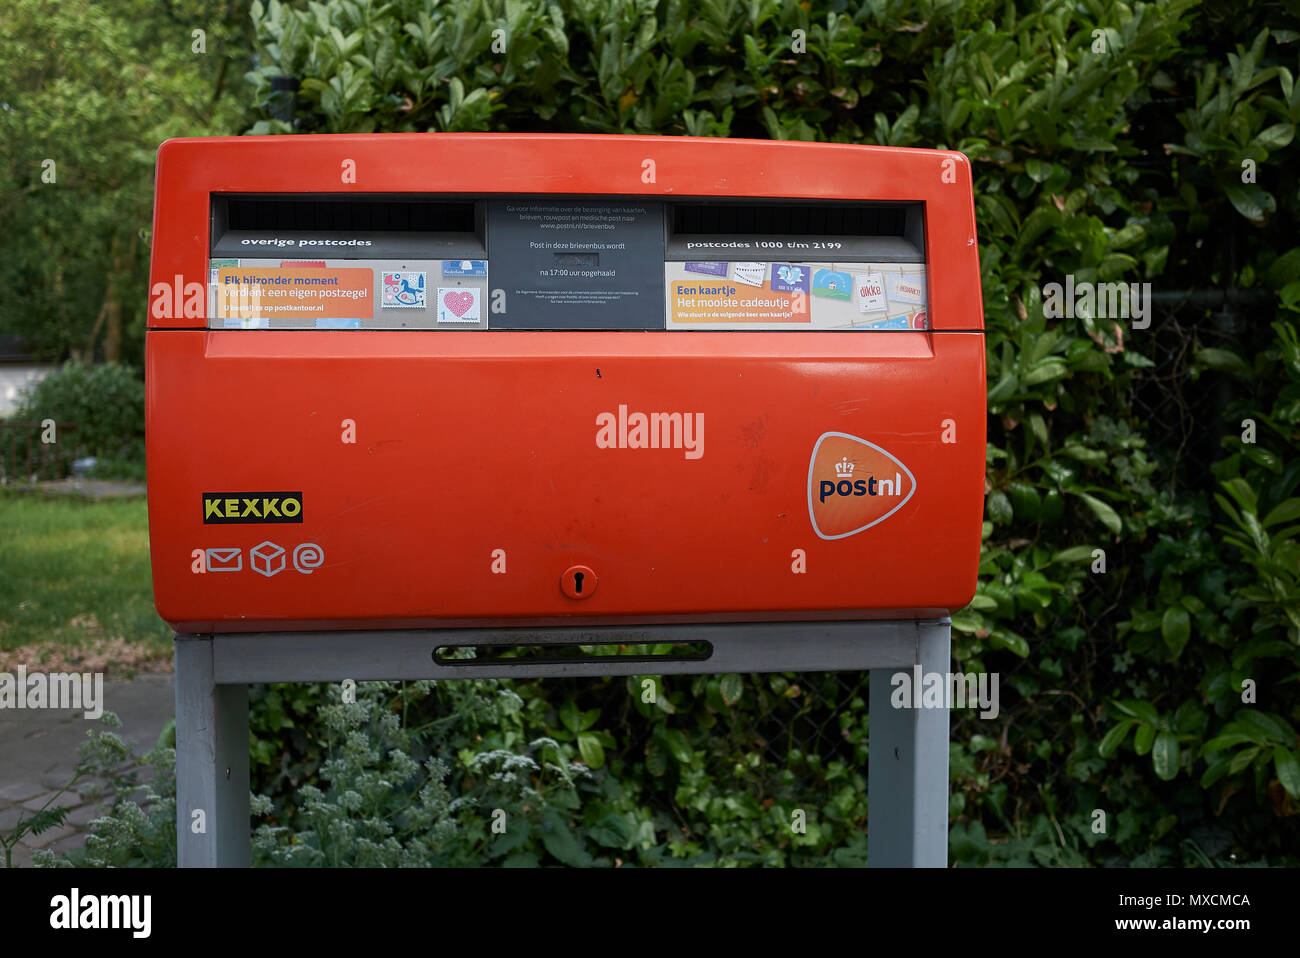 Casella postale amsterdam immagini e fotografie stock ad alta risoluzione -  Alamy